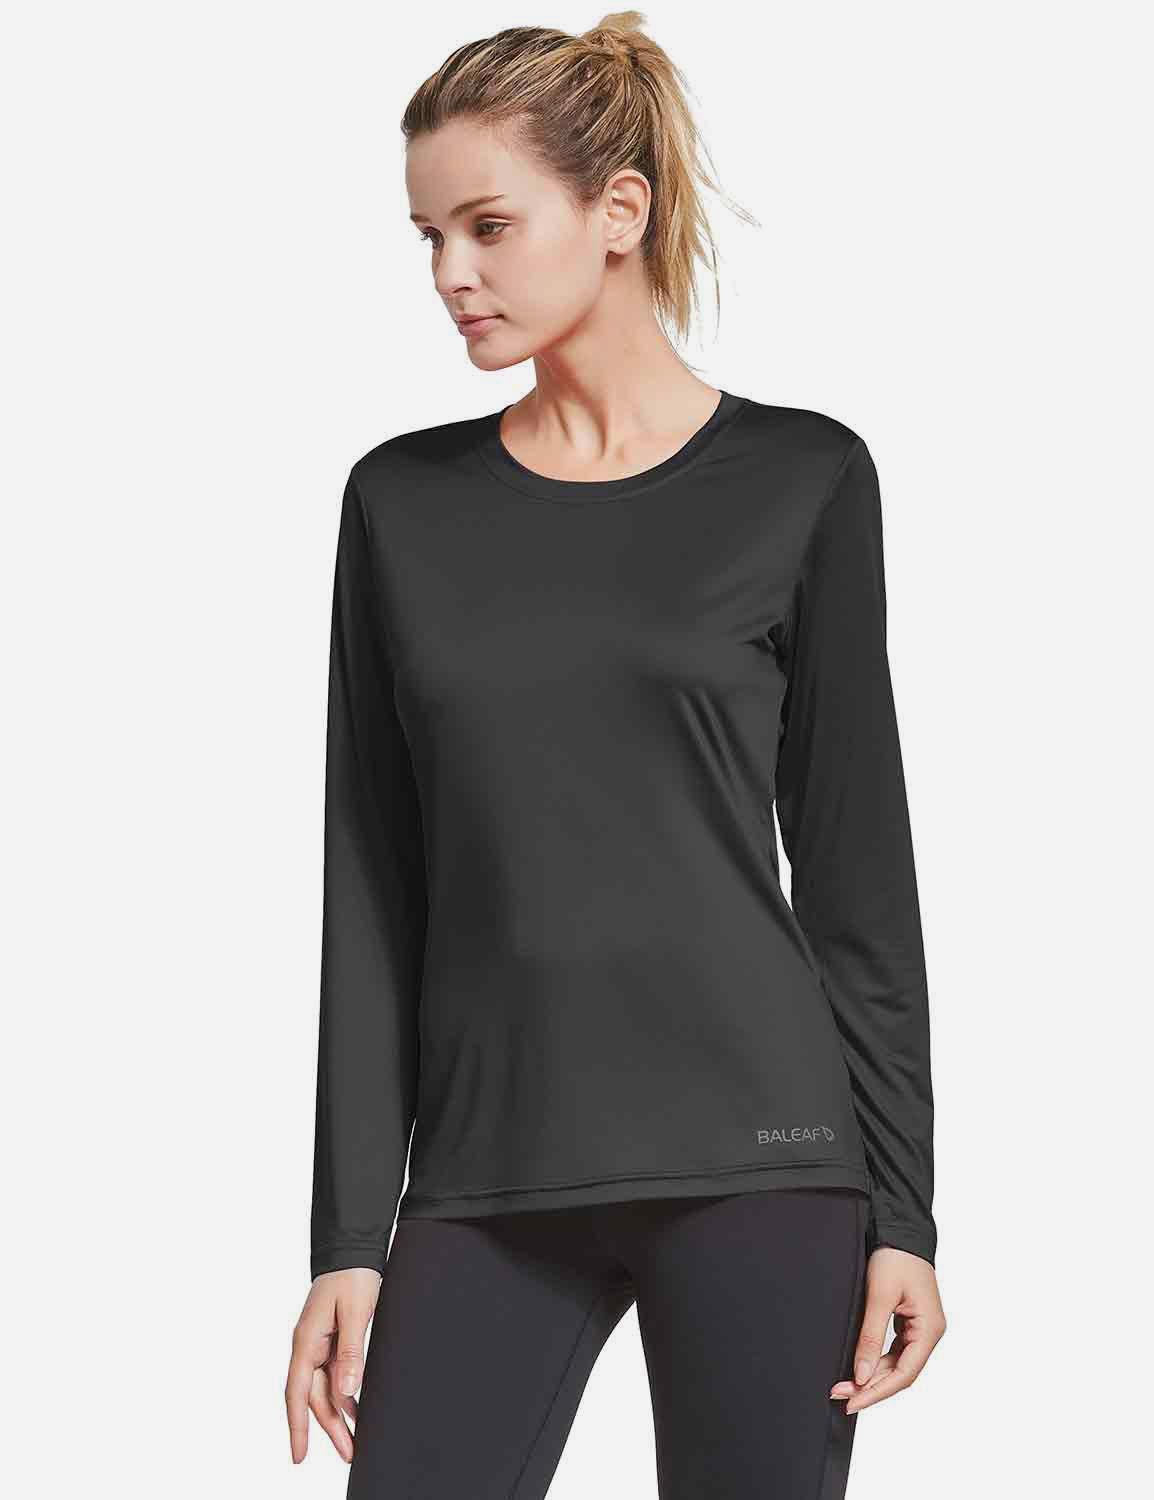 BALEAF Women's Loose Fit Tagless Workout Long Sleeved Shirt abd294 Black Front